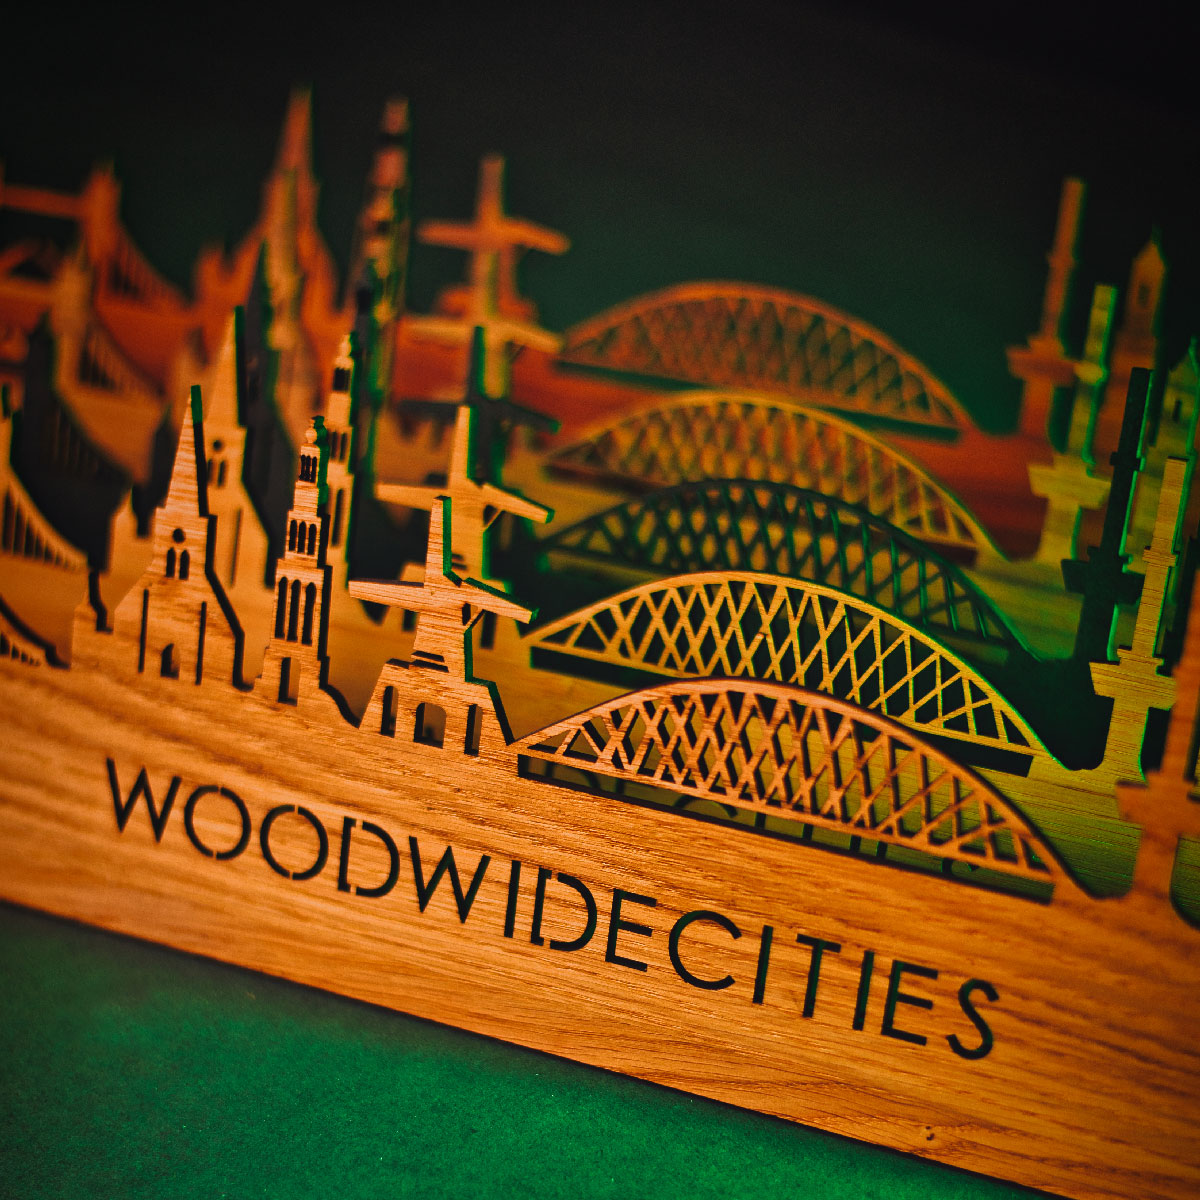 Skyline Klok Sittard Palissander houten cadeau wanddecoratie relatiegeschenk van WoodWideCities